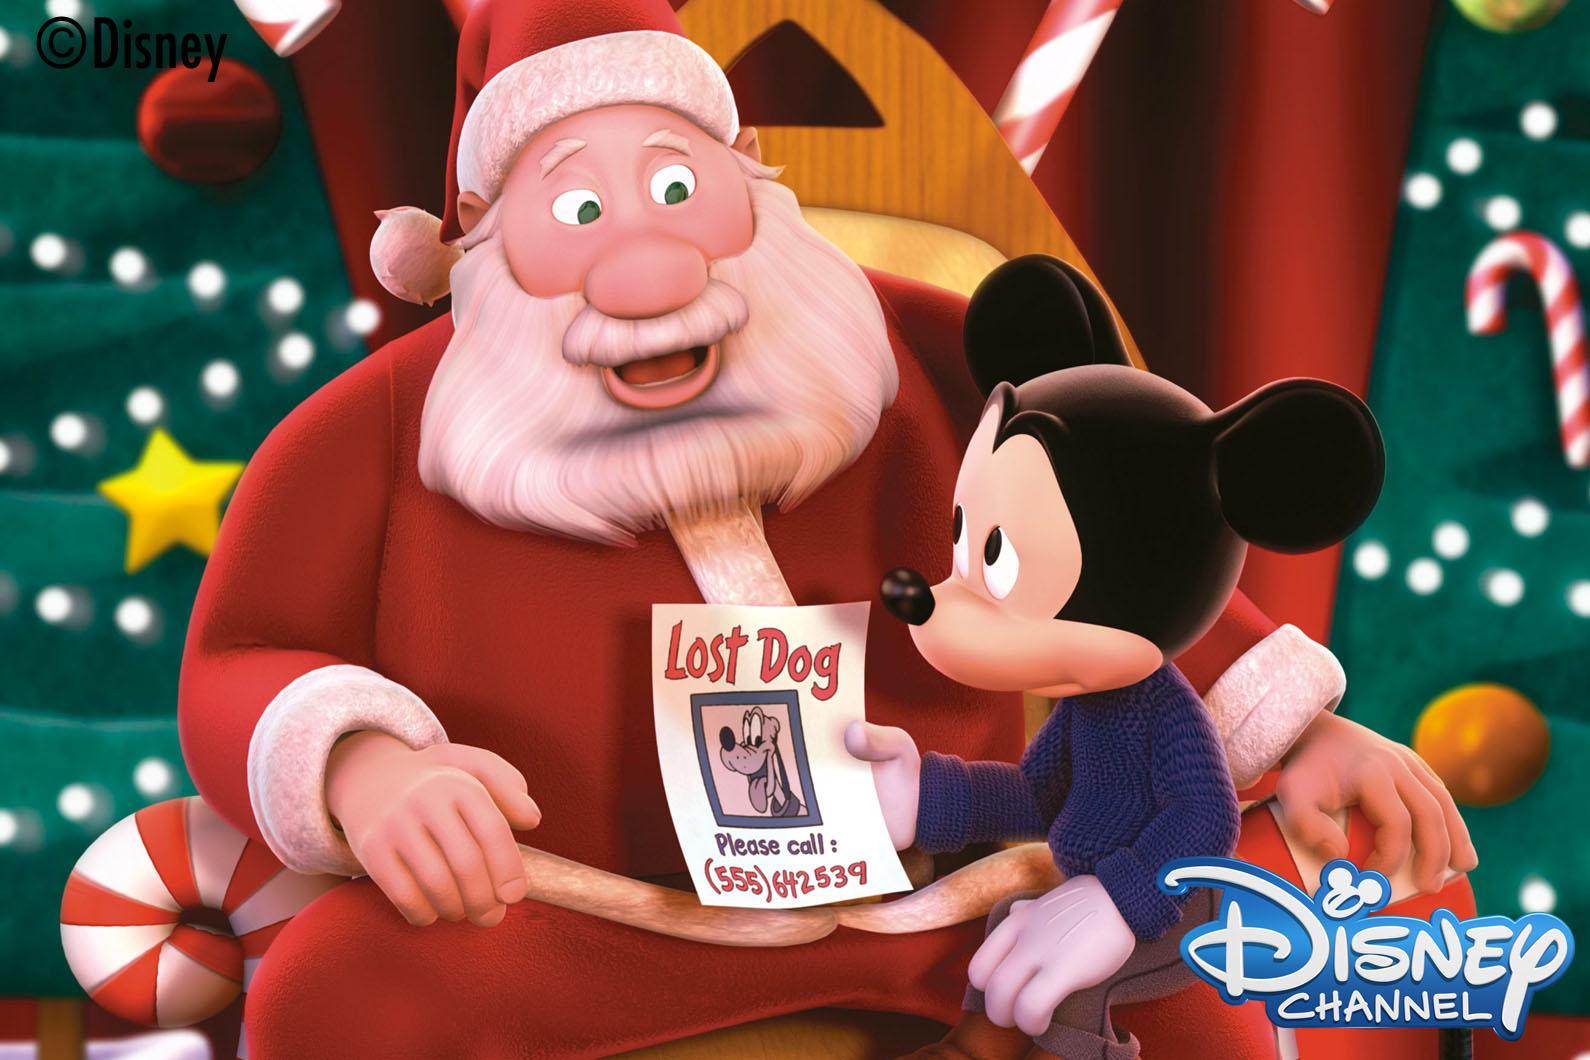 ディズニー チャンネル公式 明日12月21日 日 は あさ7 30からクリスマス映画を連続放送 14 45 ポップアップ ミッキー すてきなクリスマス など 心あたたまるクリスマス作品をたっぷりお楽しみください Http T Co Sux9cnk9x9 Twitter